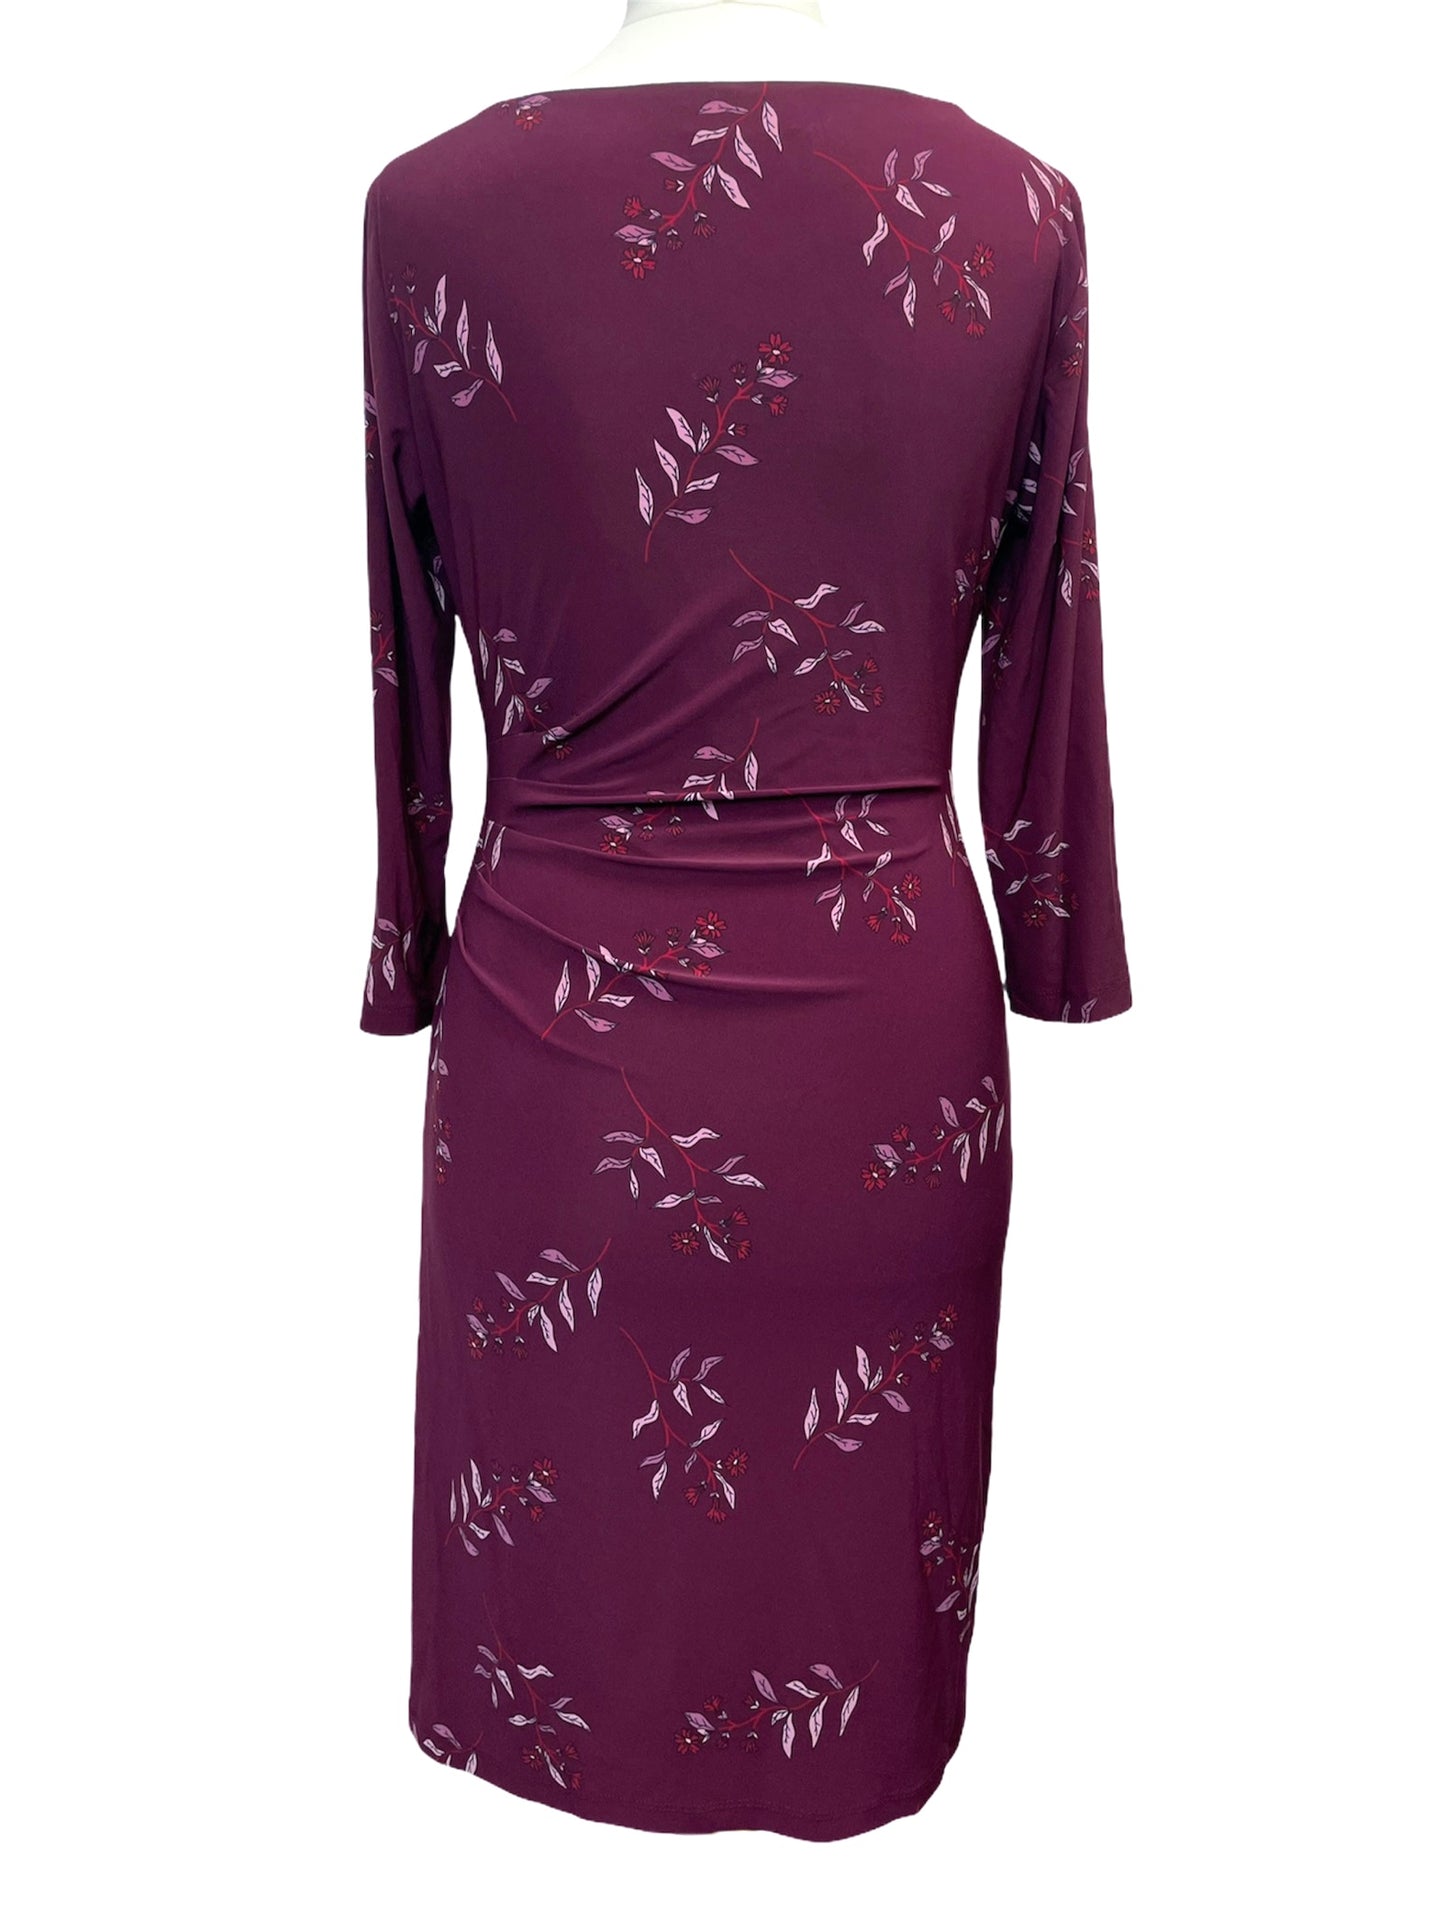 Ralph Lauren Women’s Victorina Floral Print Dress Burgundy